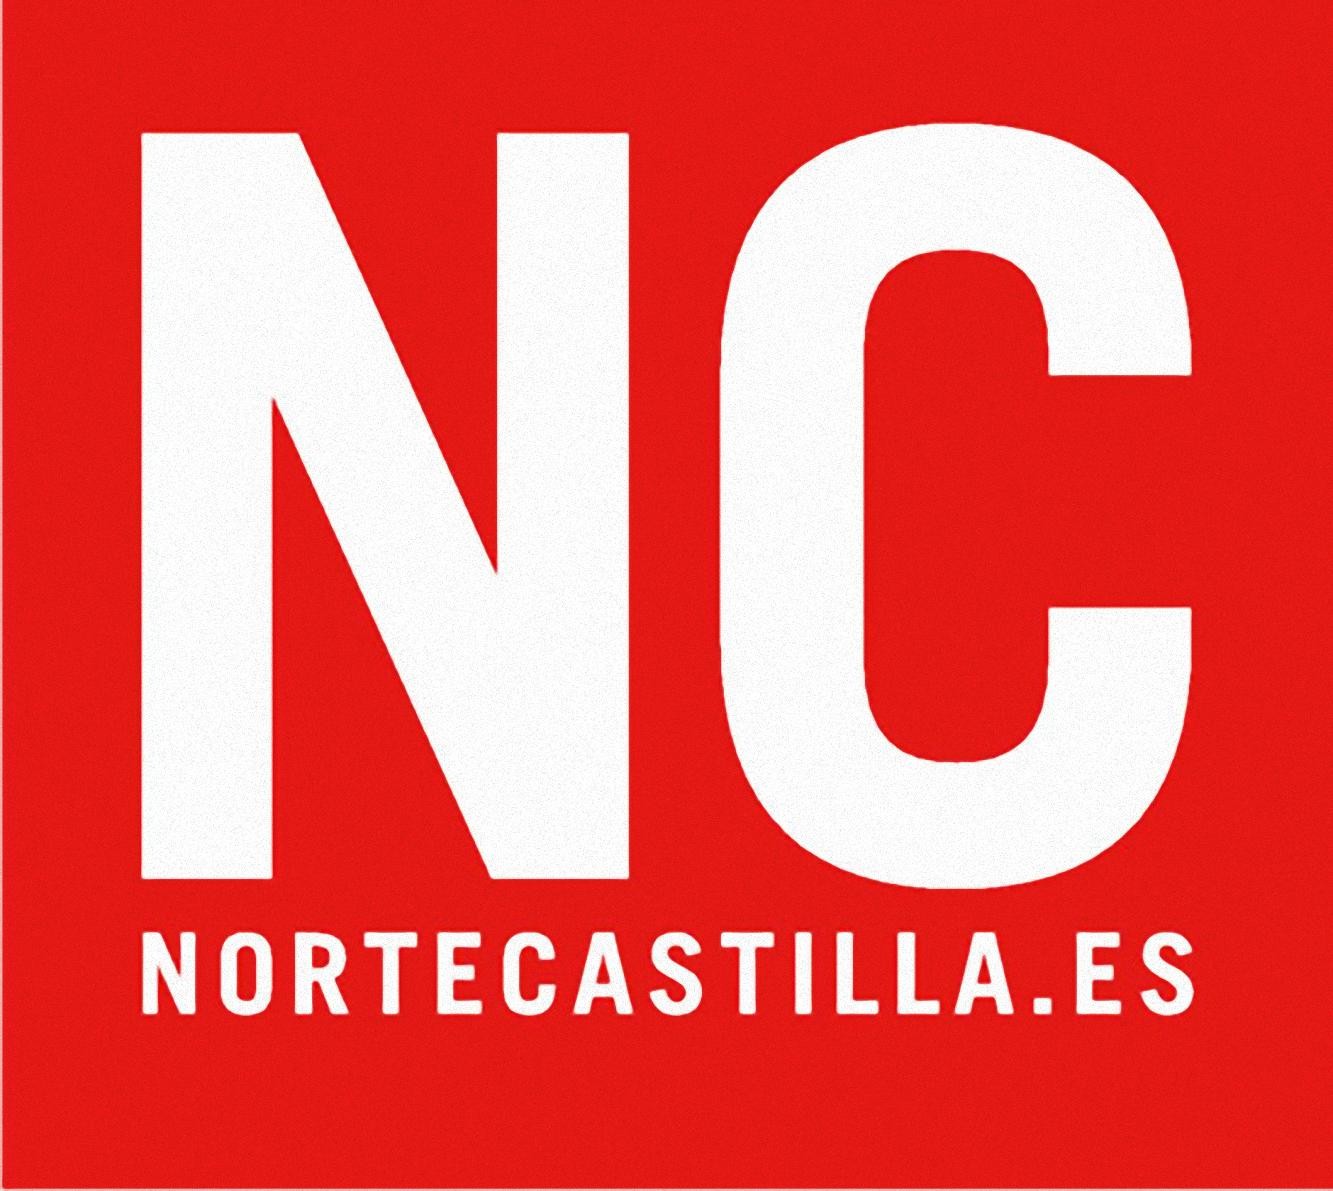 El Norte de Castilla logo